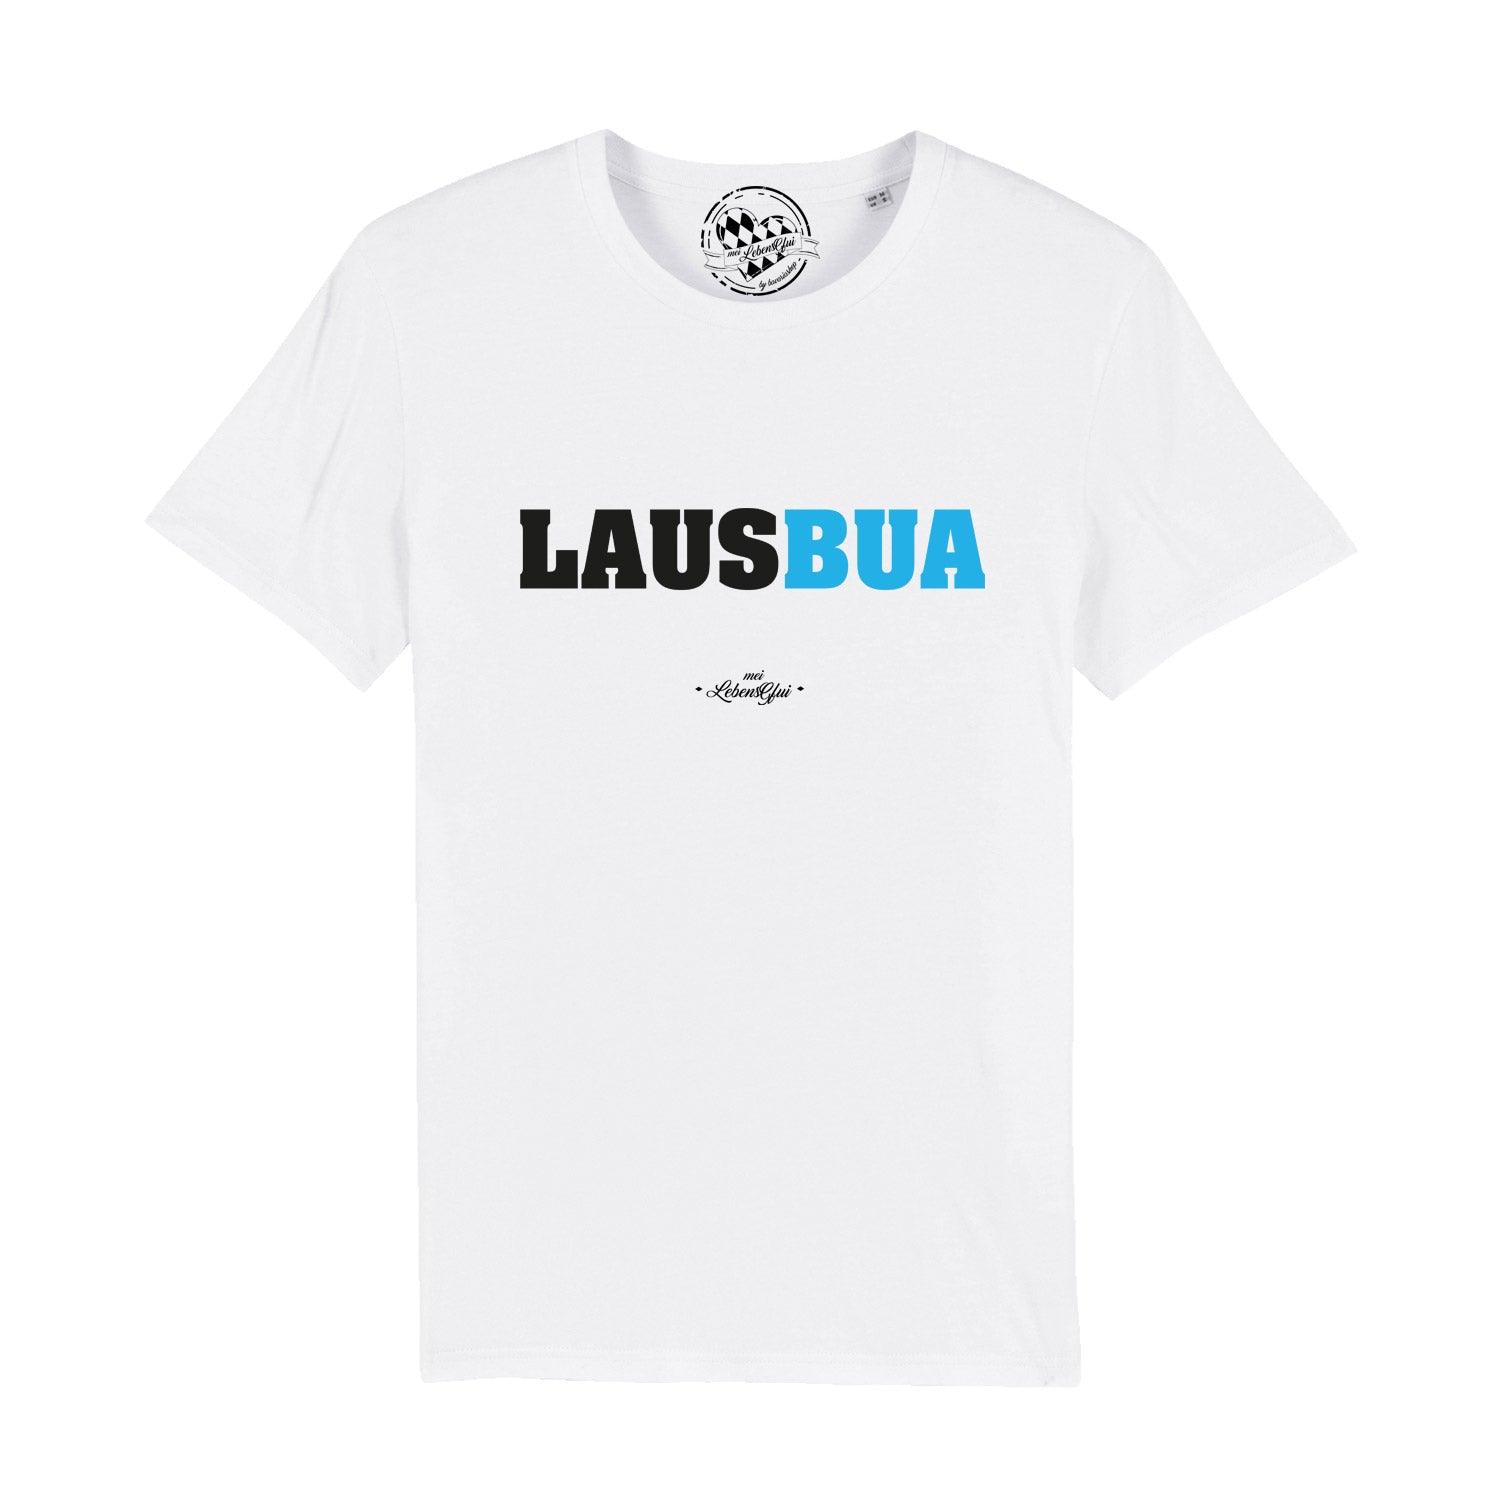 Herren T-Shirt "Lausbua" - bavariashop - mei LebensGfui